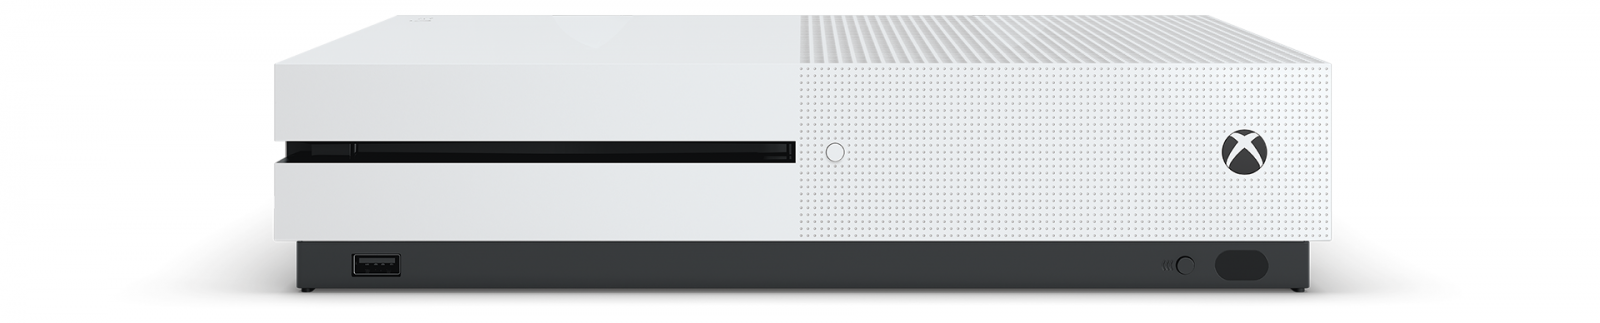 Xbox One S 2TB с двумя джойстиками image1